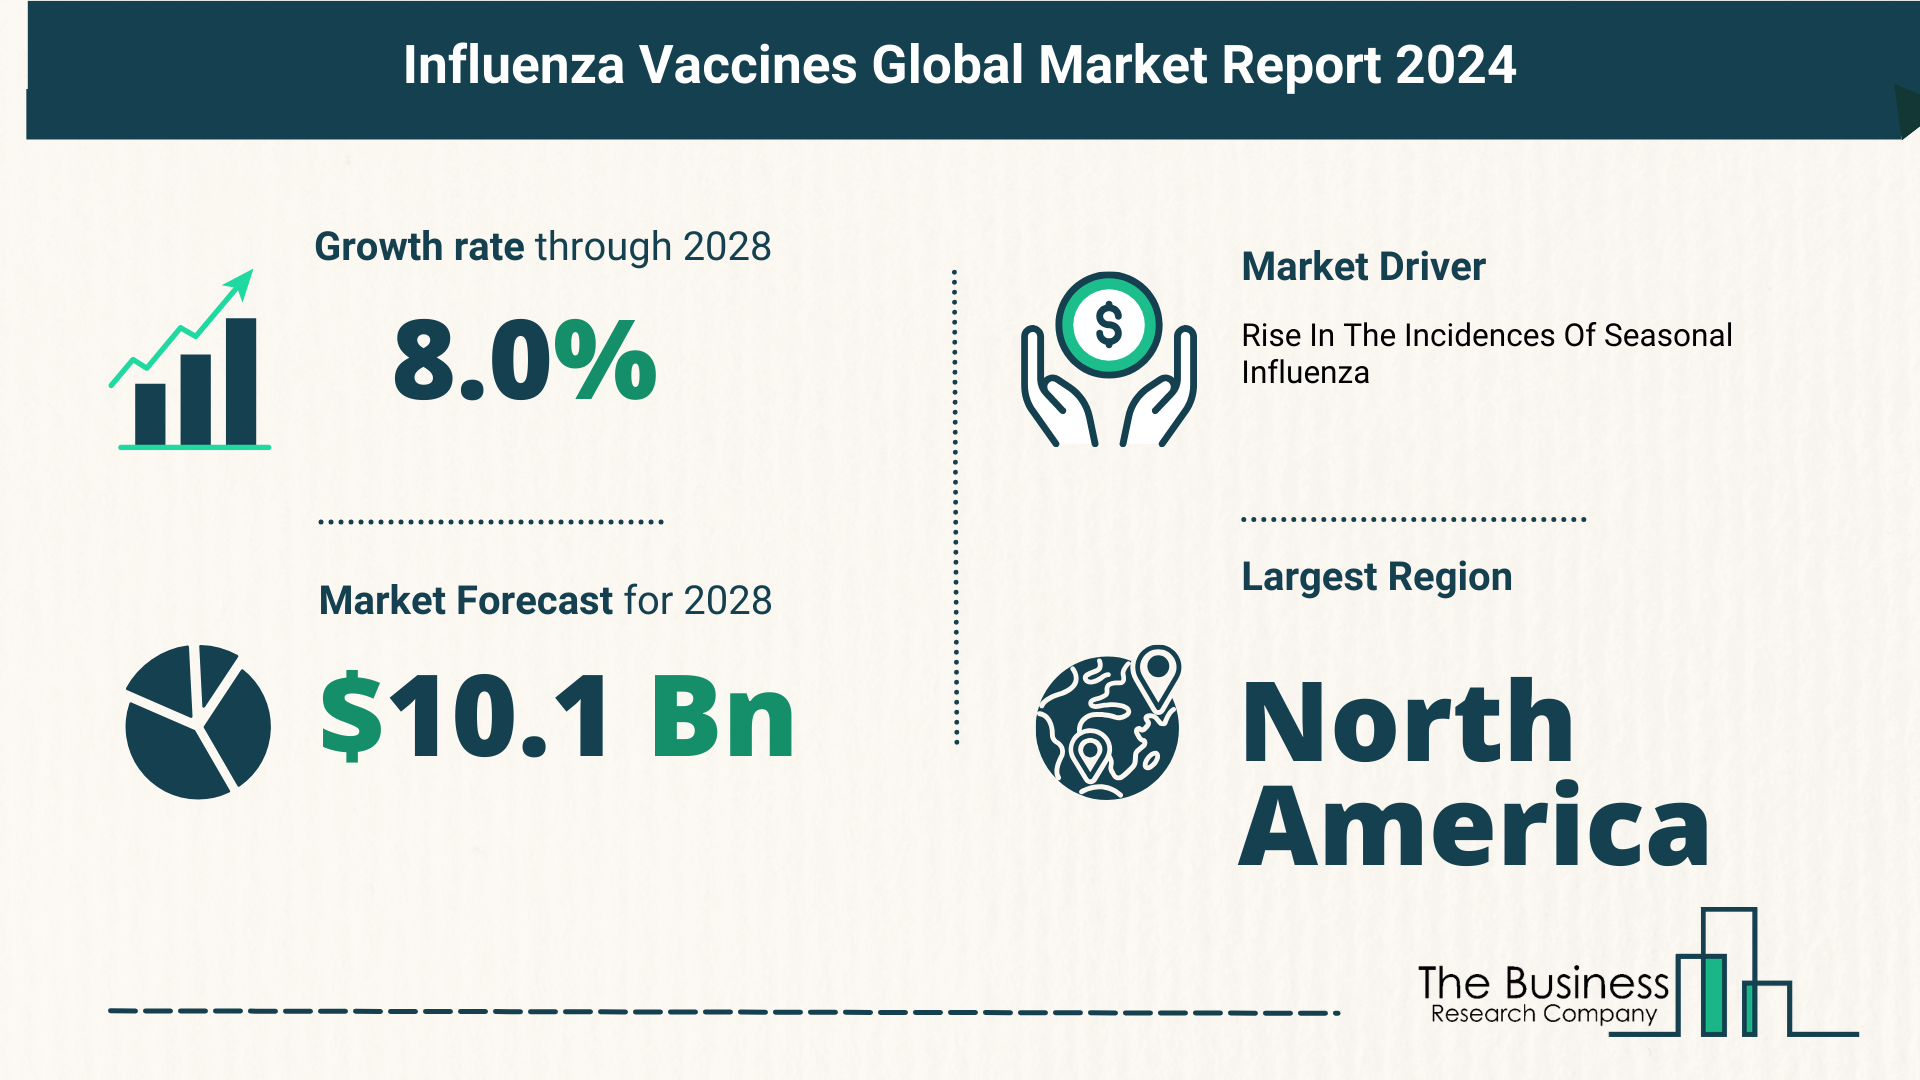 Global Influenza Vaccines Market